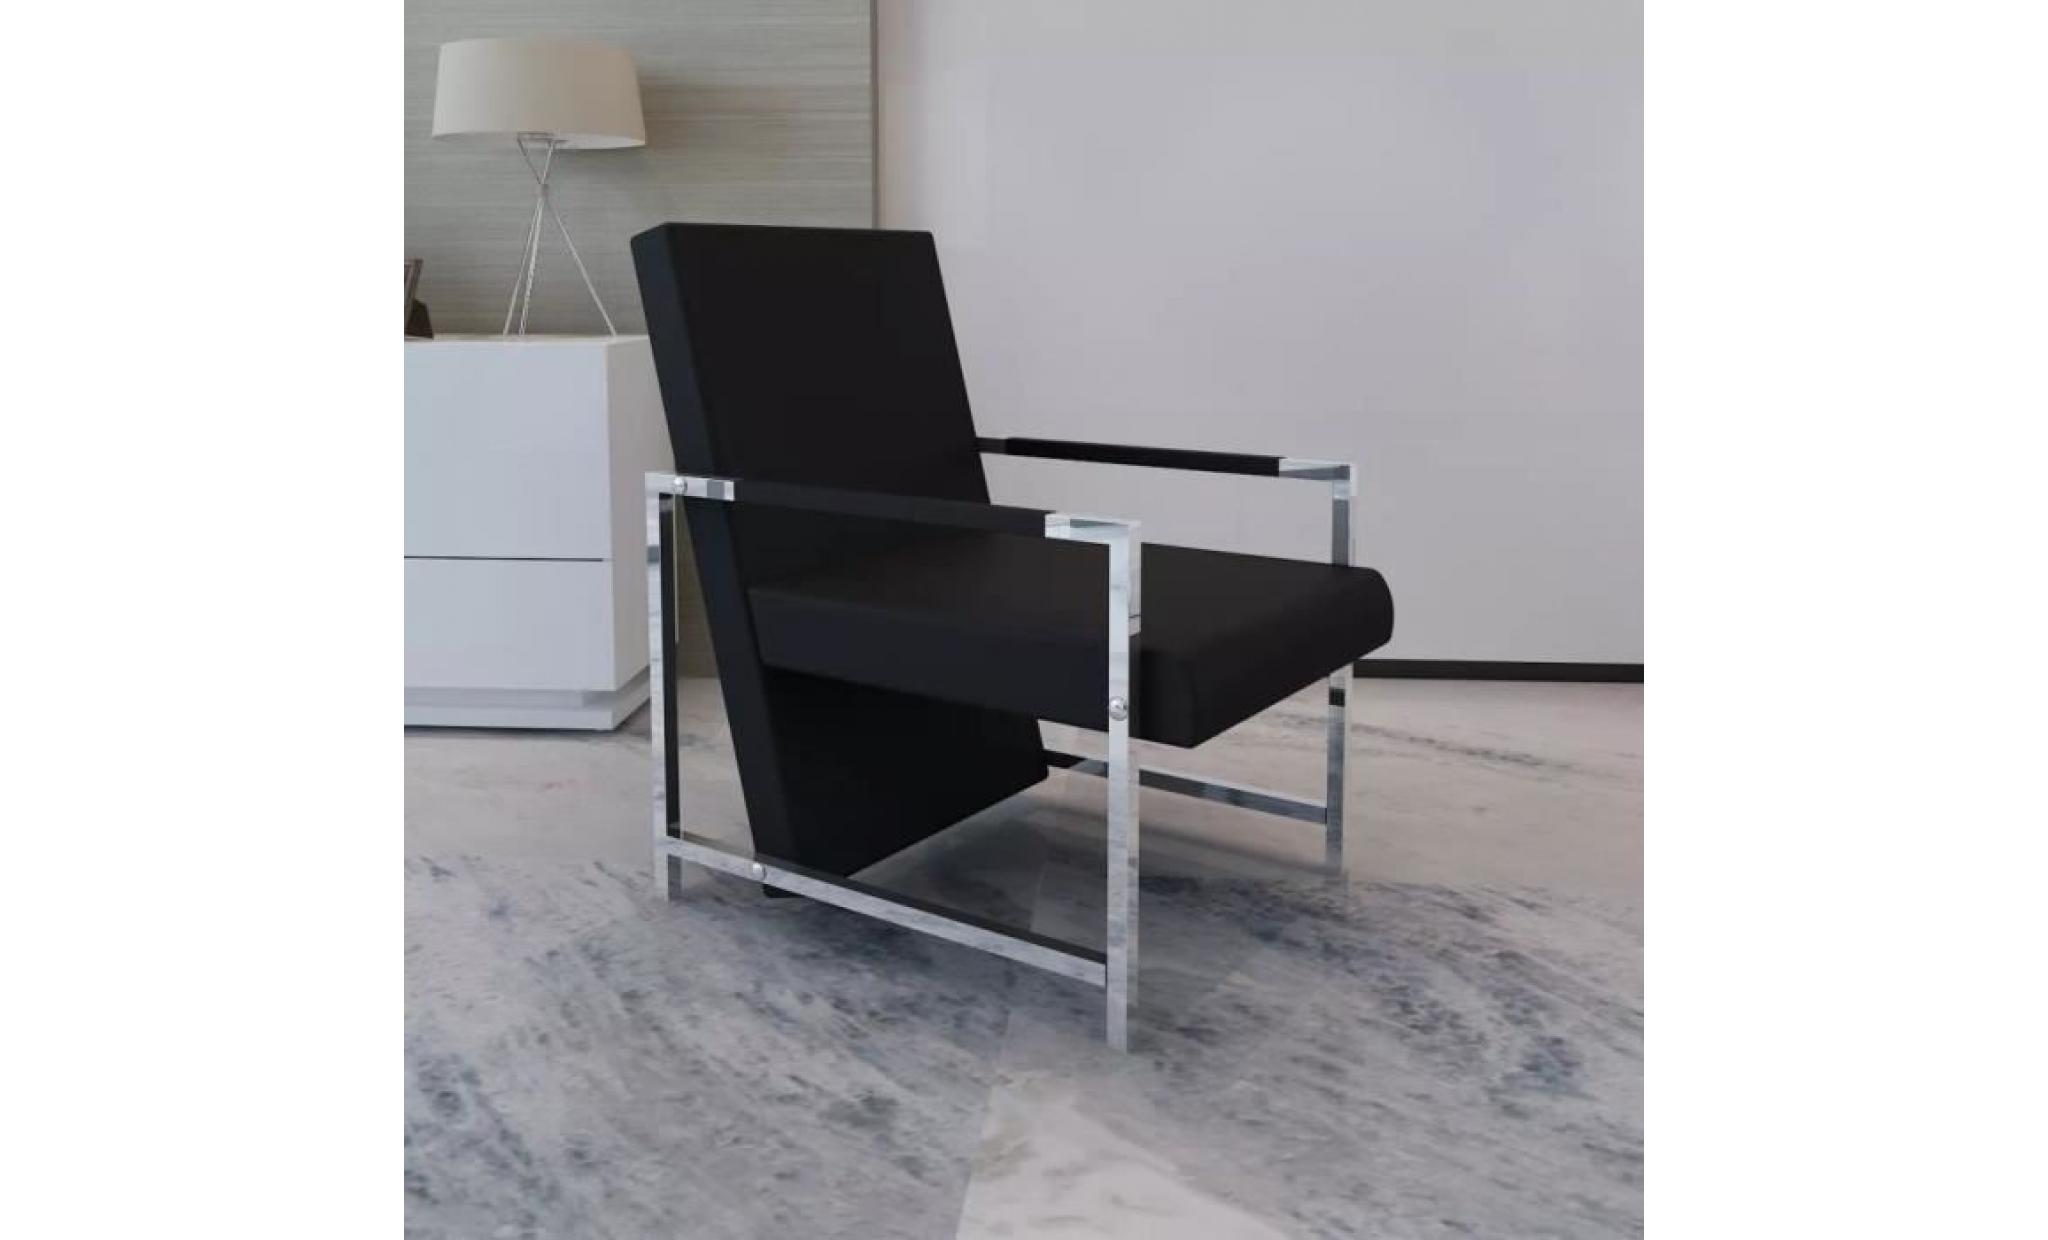 fauteuil magnifique avec pieds chromés noir fauteuil de bureau fauteuil gamer fauteuil scandinave